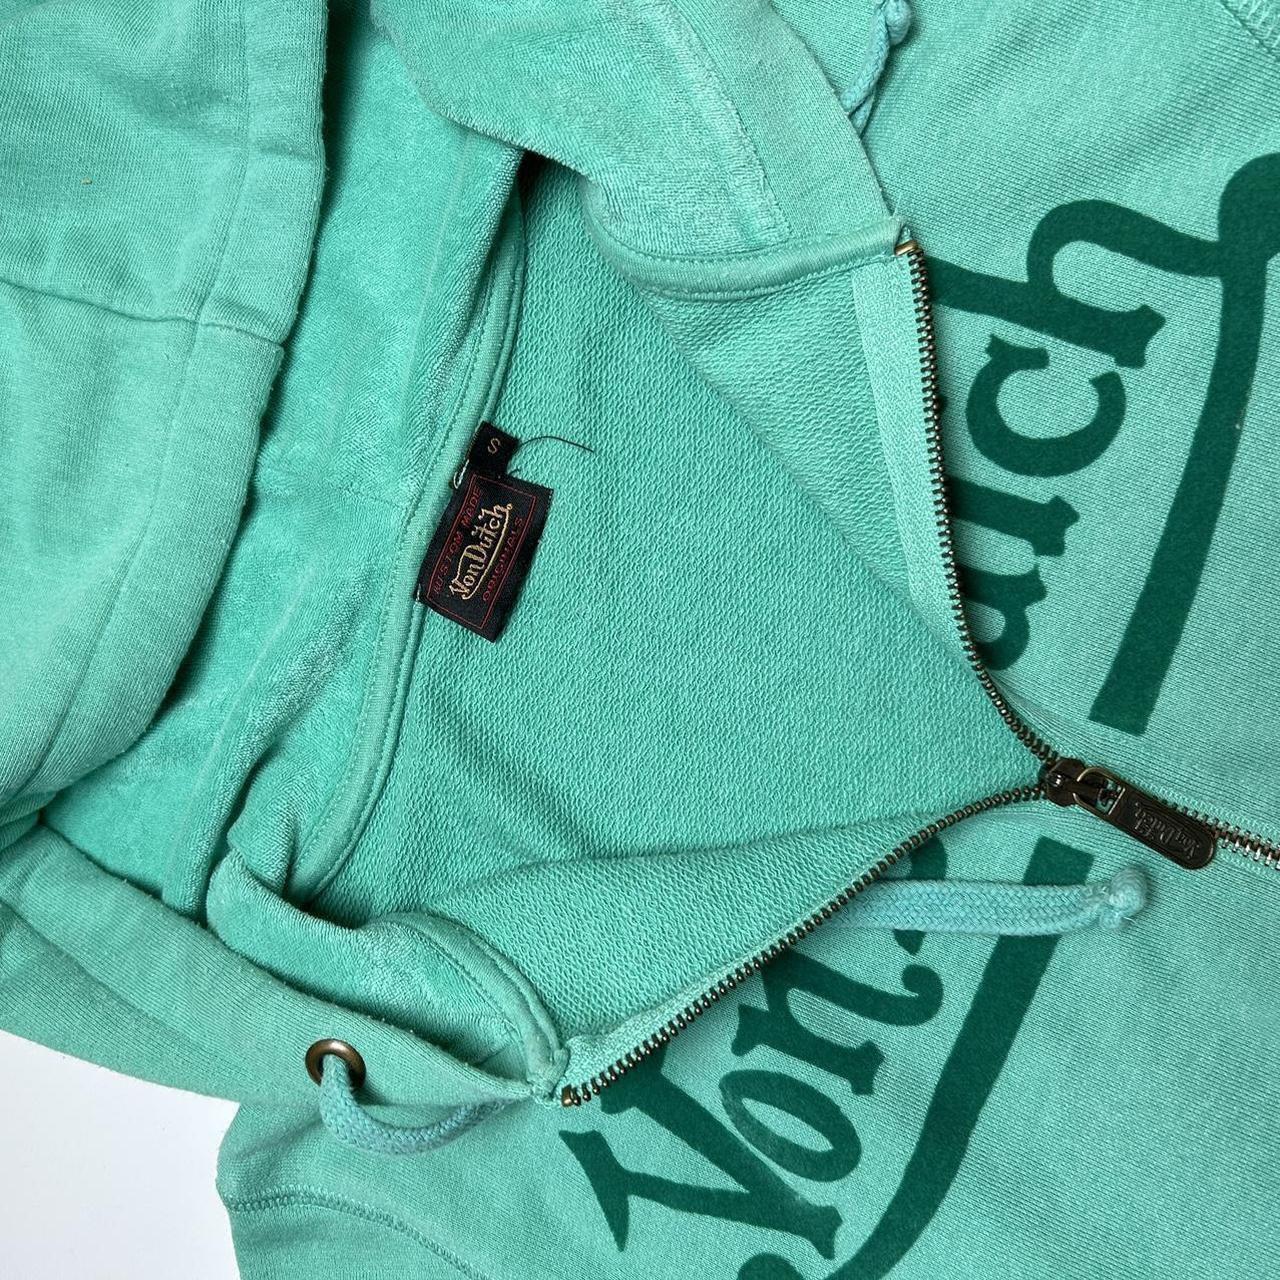 Von dutch zip up hoodie, rare green colour - Size S... - Depop